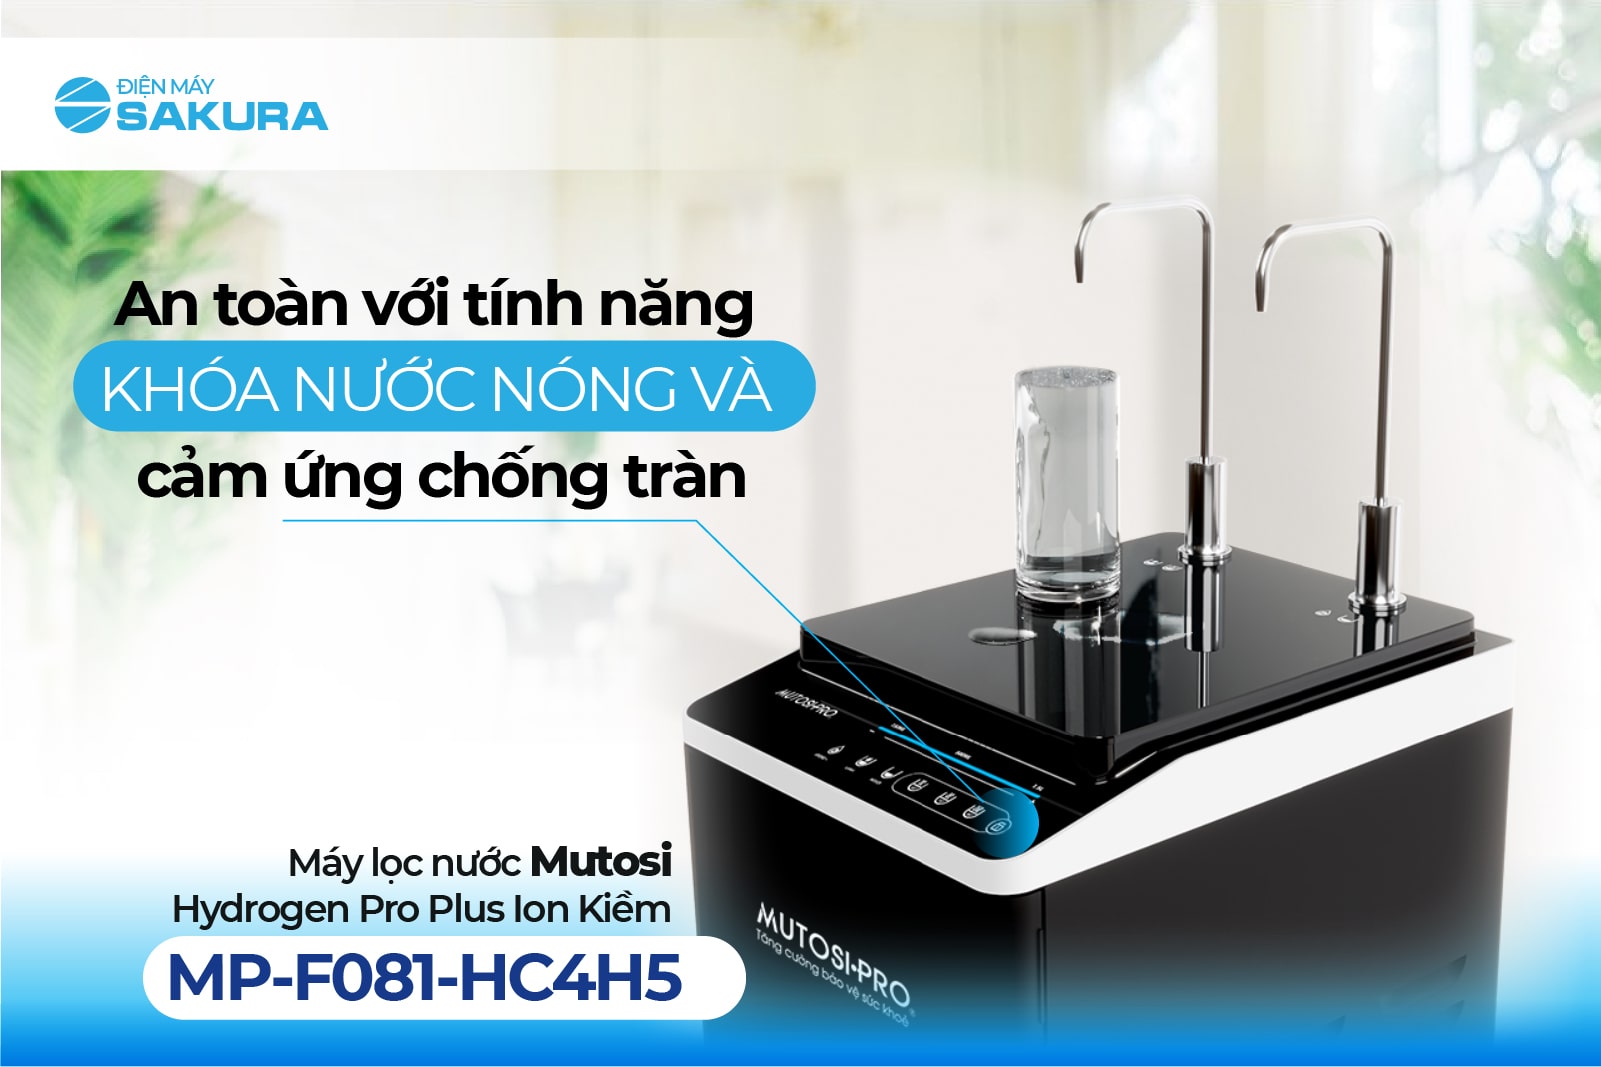 An toàn với tính năng khóa nước nóng của Mutosi MP-F081-HC4H5